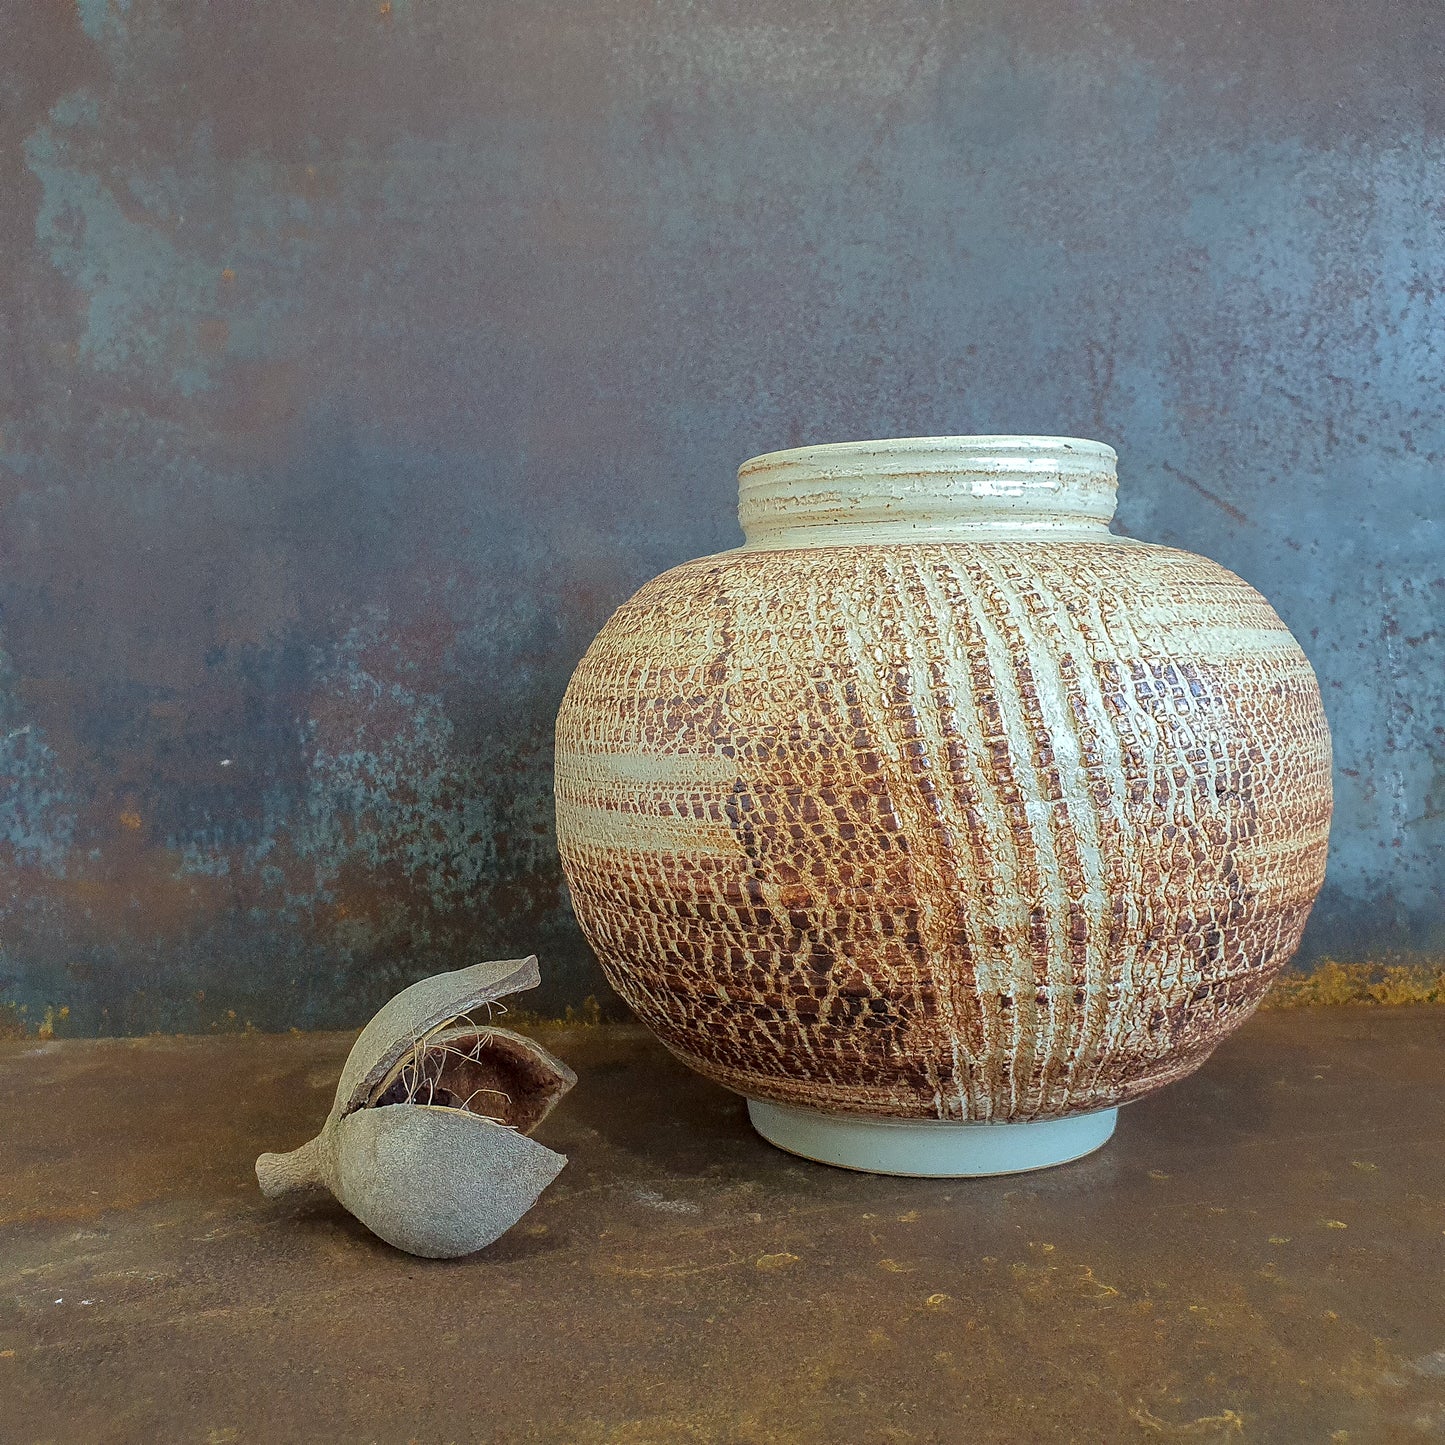 Desert Trails Vase